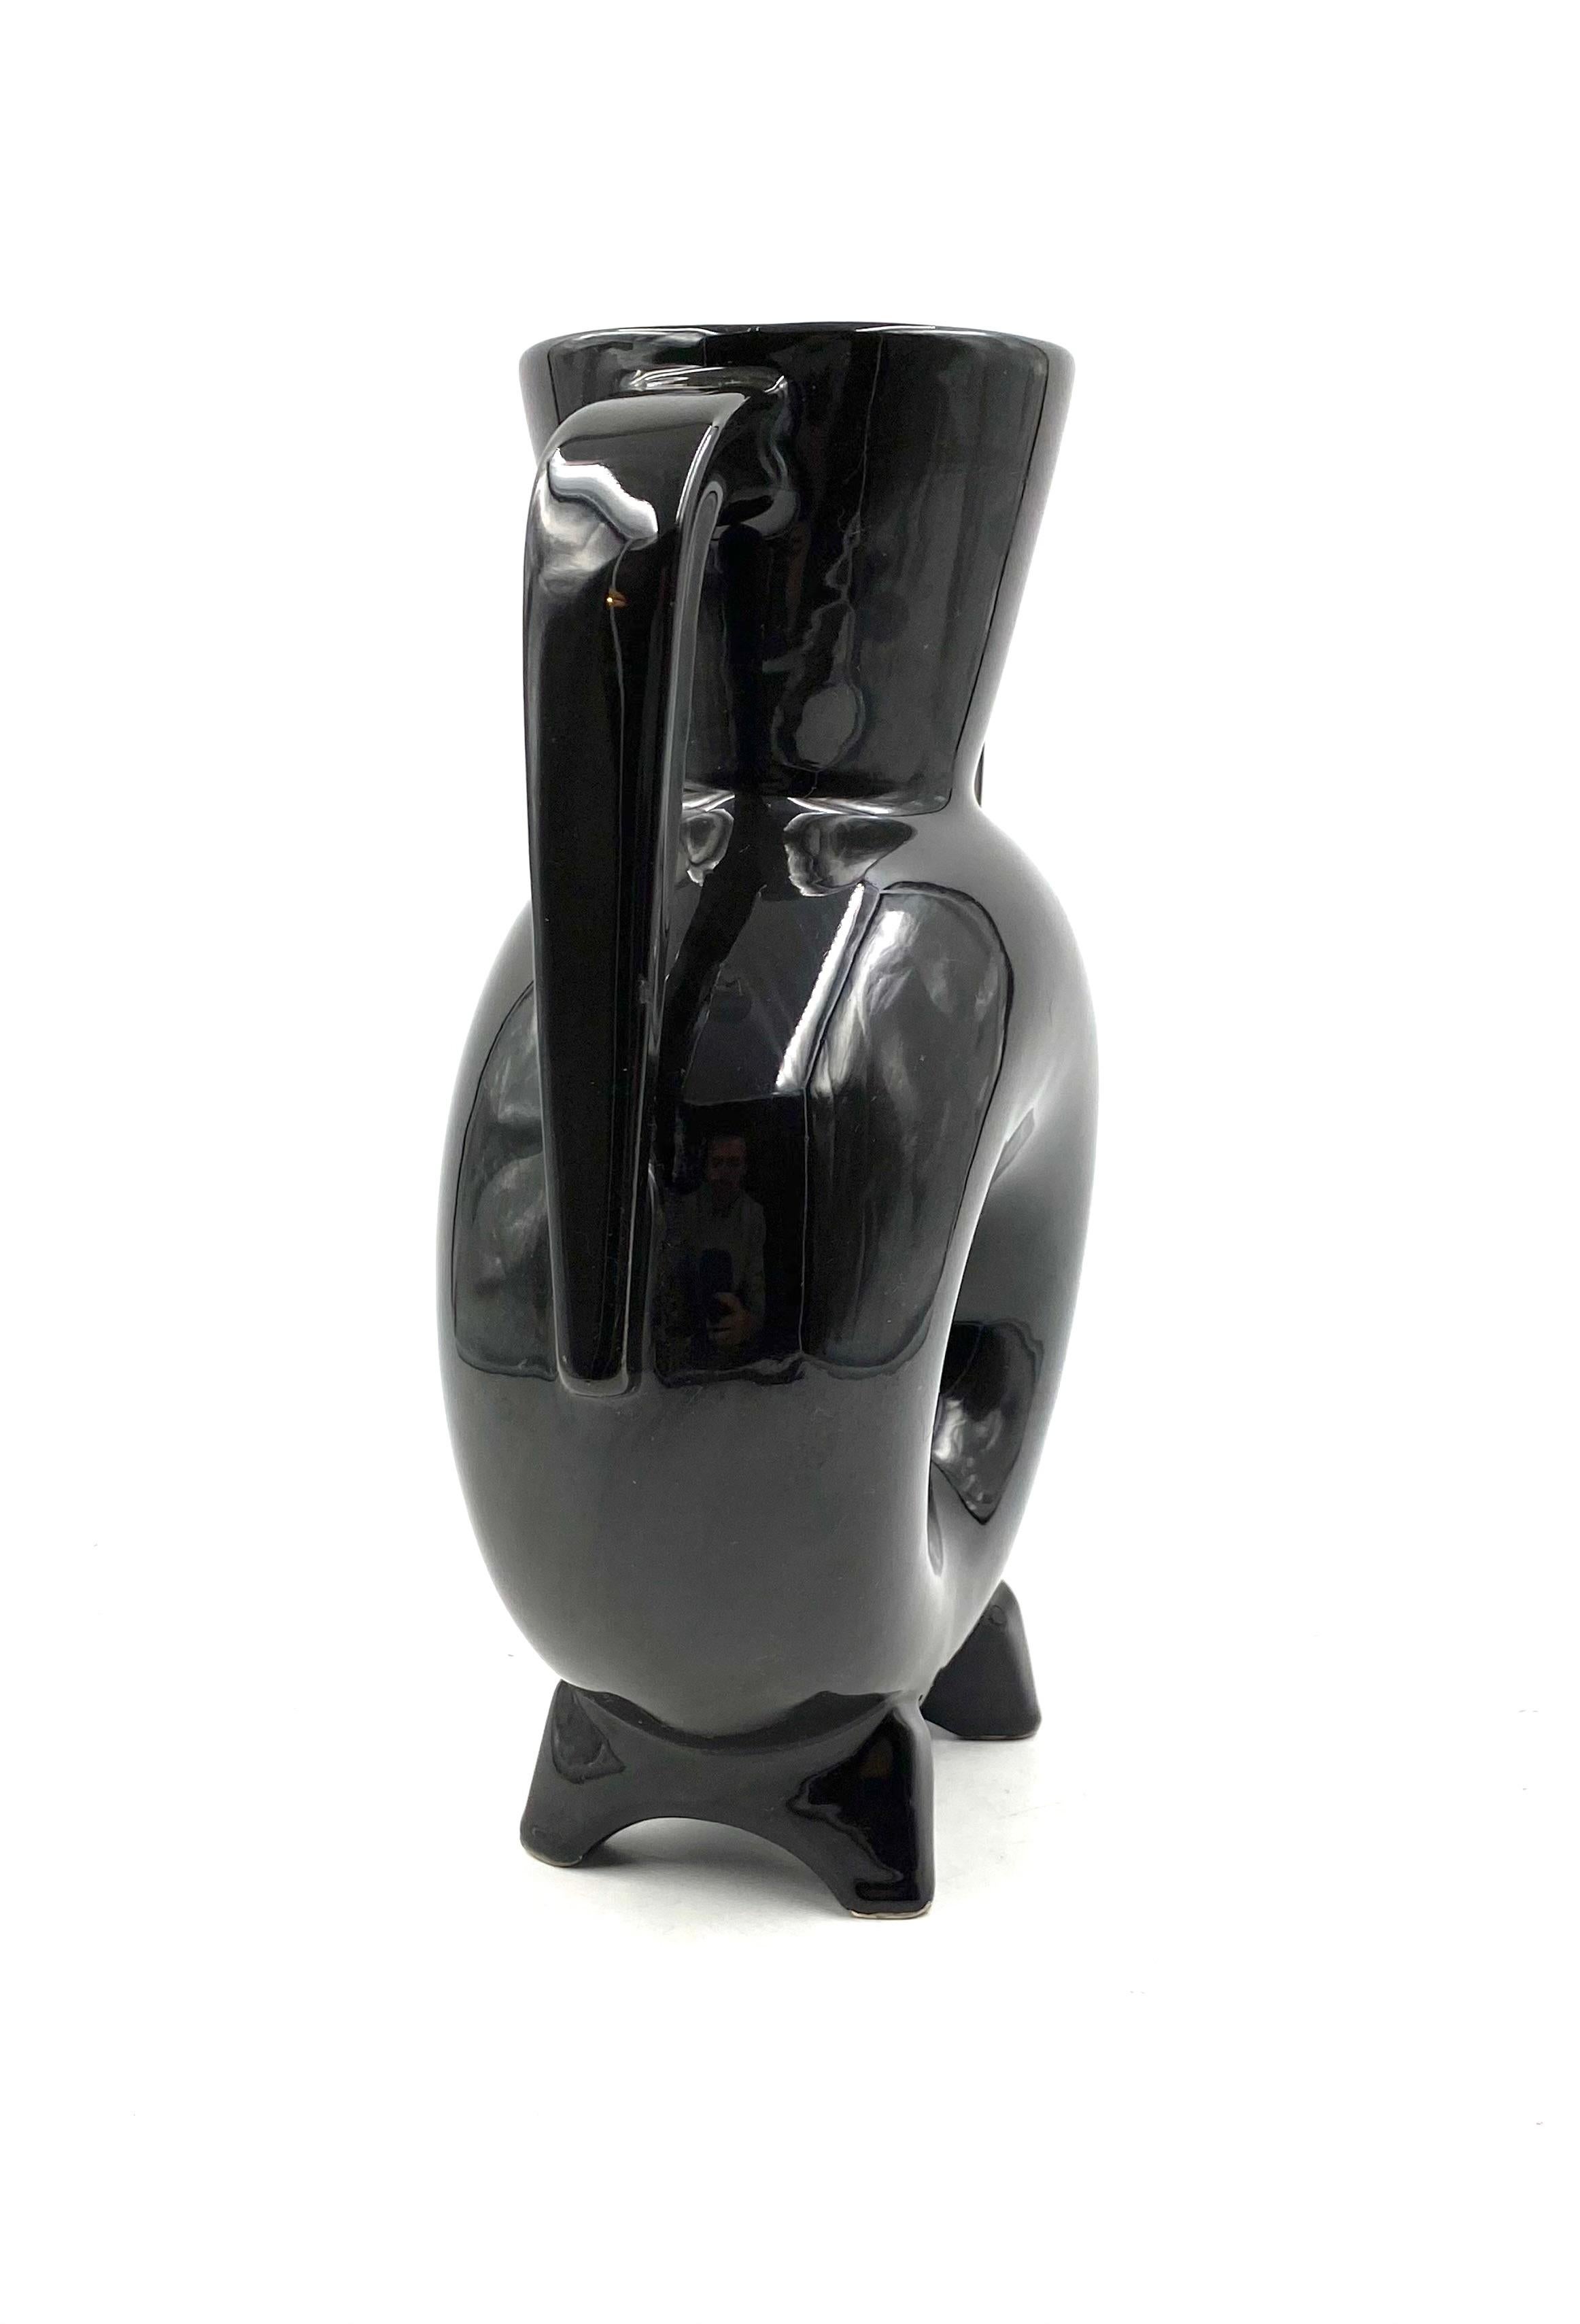 Organic Black Ceramic Vase, France, 1970s For Sale 10